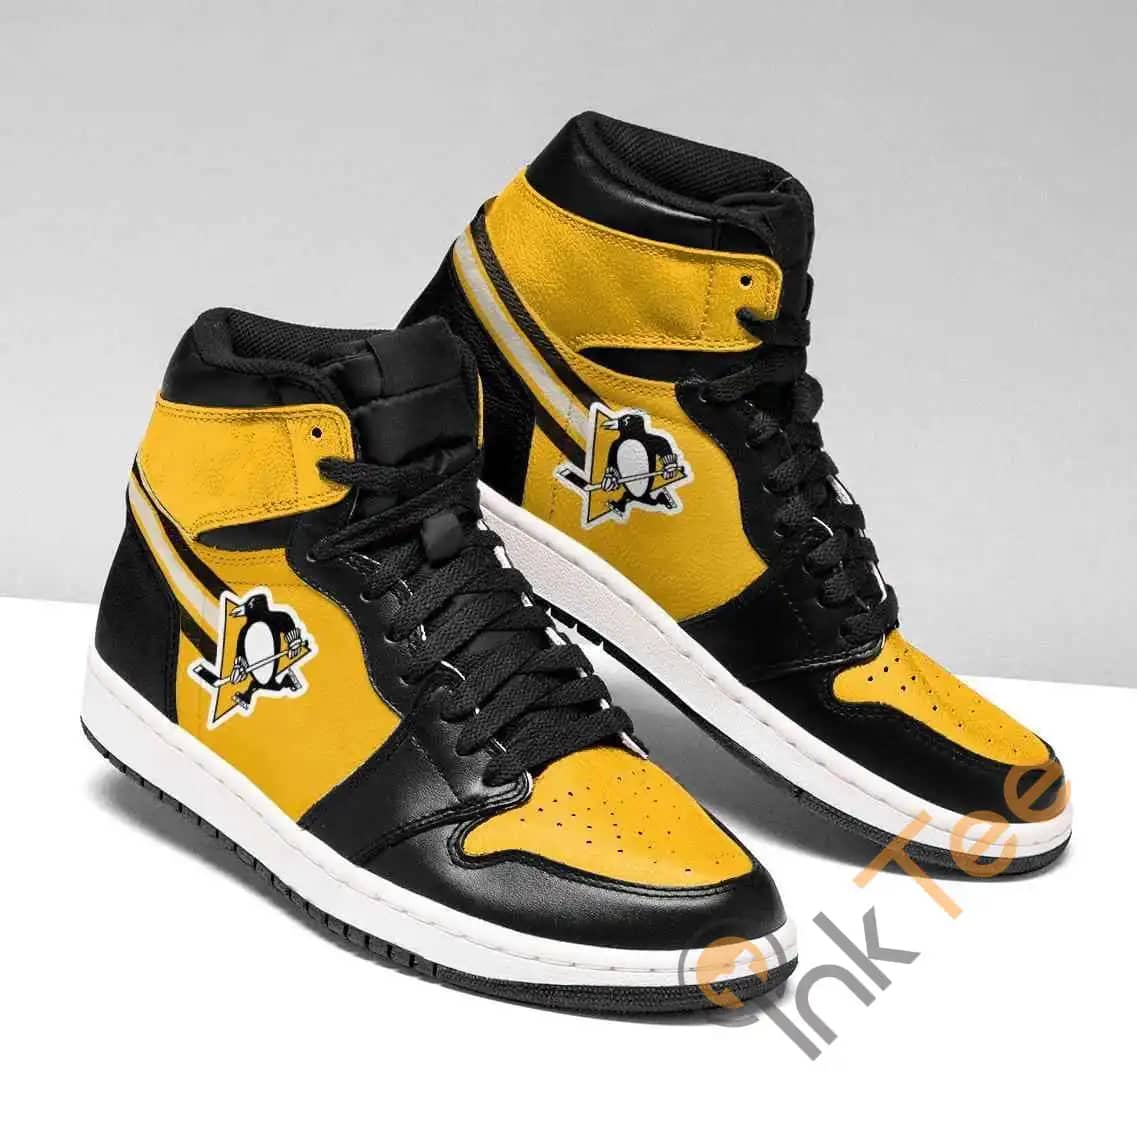 Pittsburgh Penguins Nhl Air Jordan Shoes